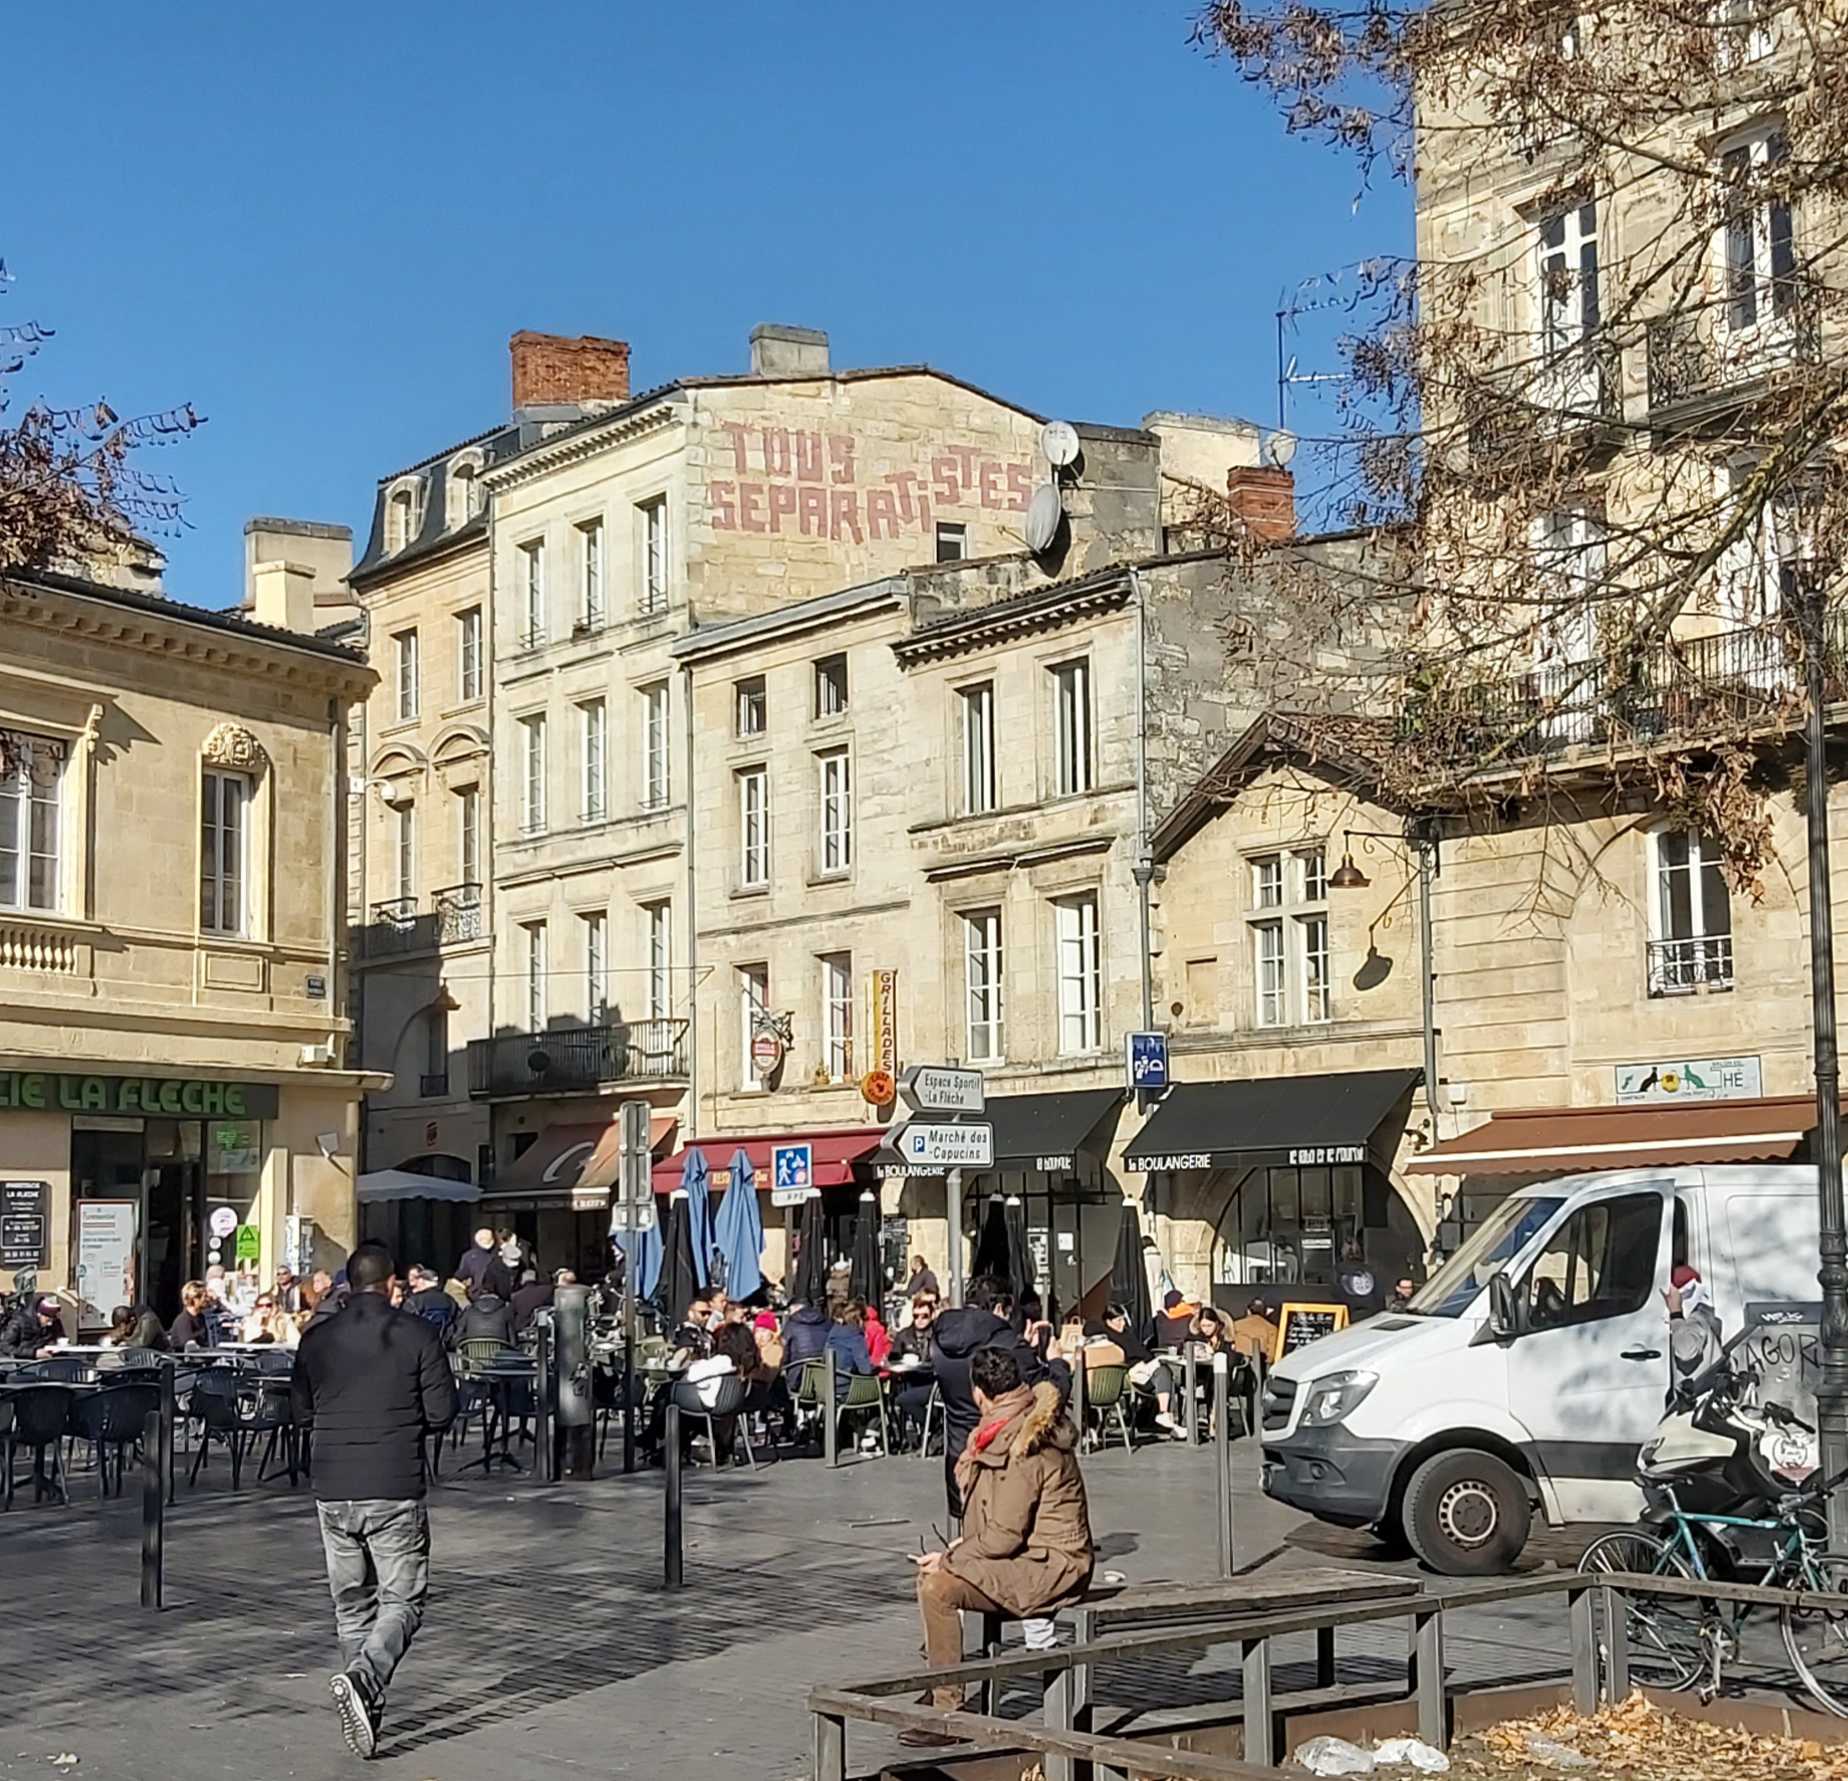 Sur les murs, en hauteur, de la place Saint-Michel, le graffiti “tous séparatistes”, expression renvoyant aux critiques de l'universalisme républicain en France.